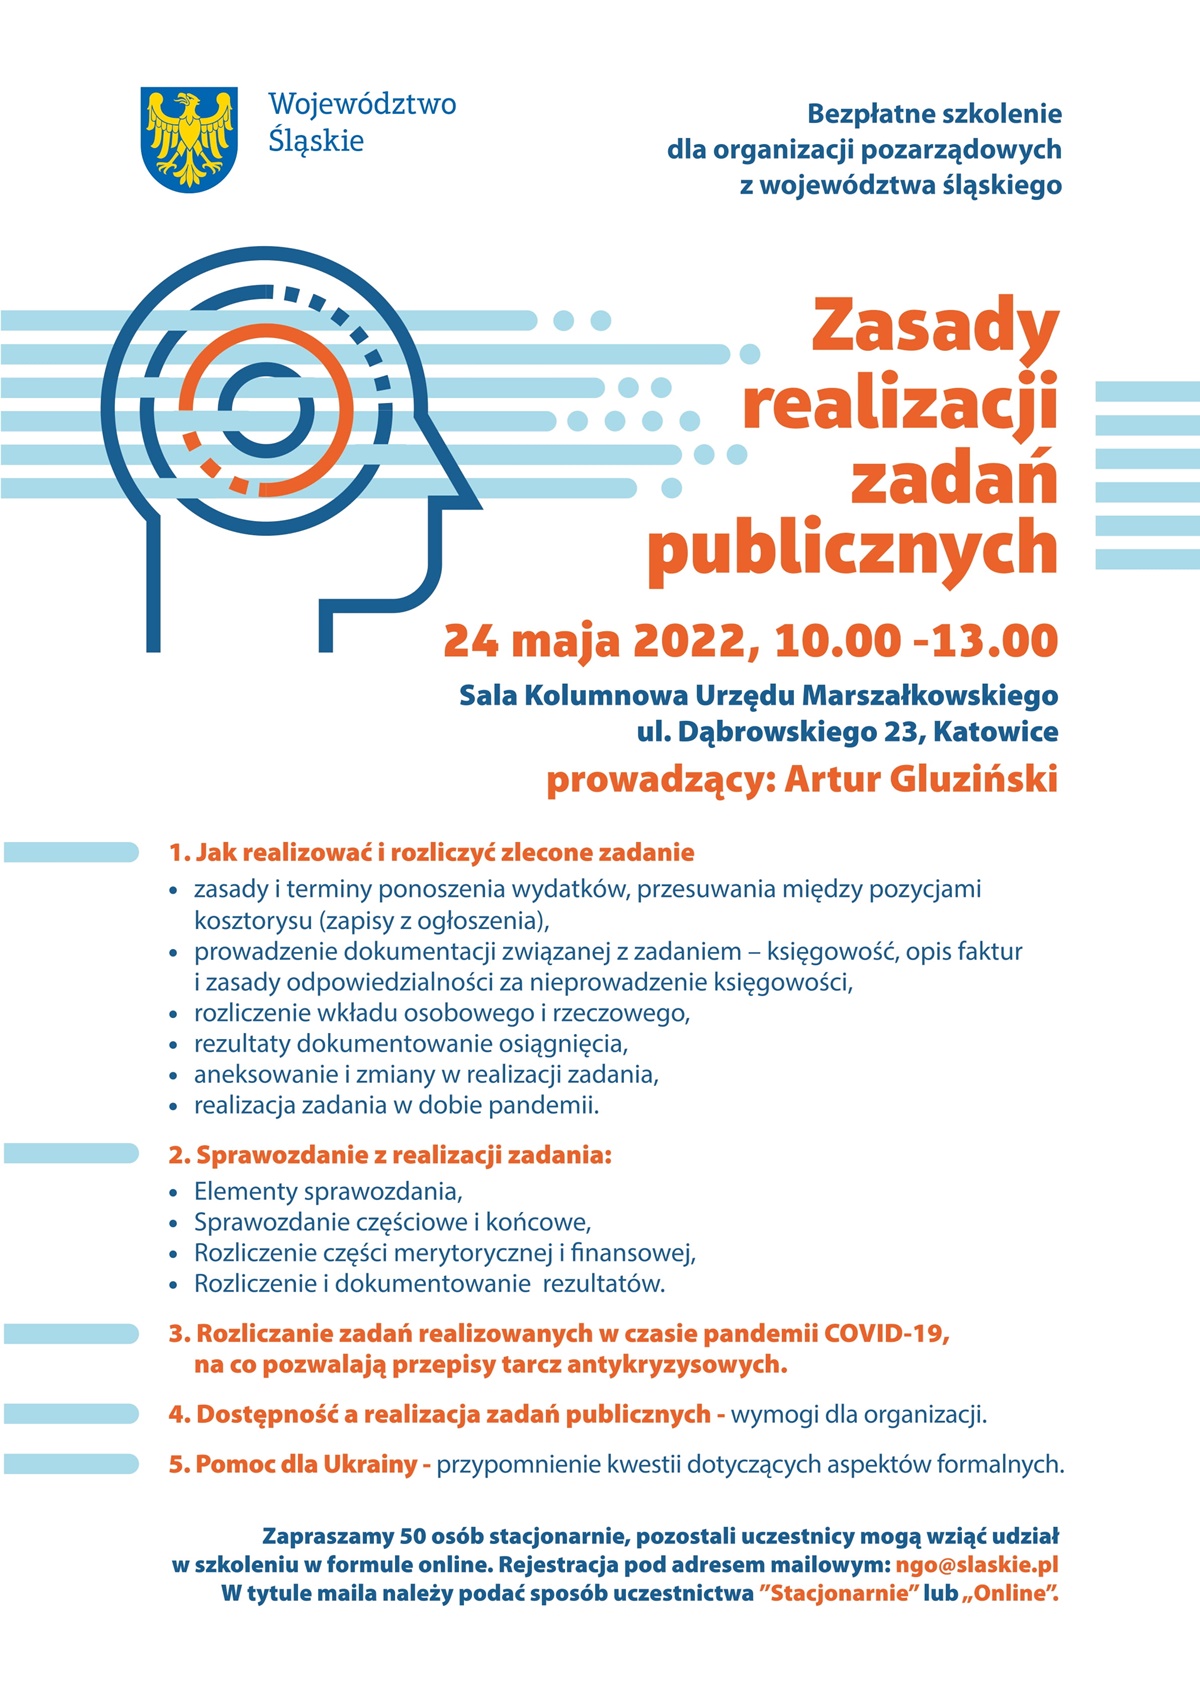 Plakat dotyczący bezpłatnego szkolenia dla organizacji pozarządowych z województwa śląskiego mat.pras